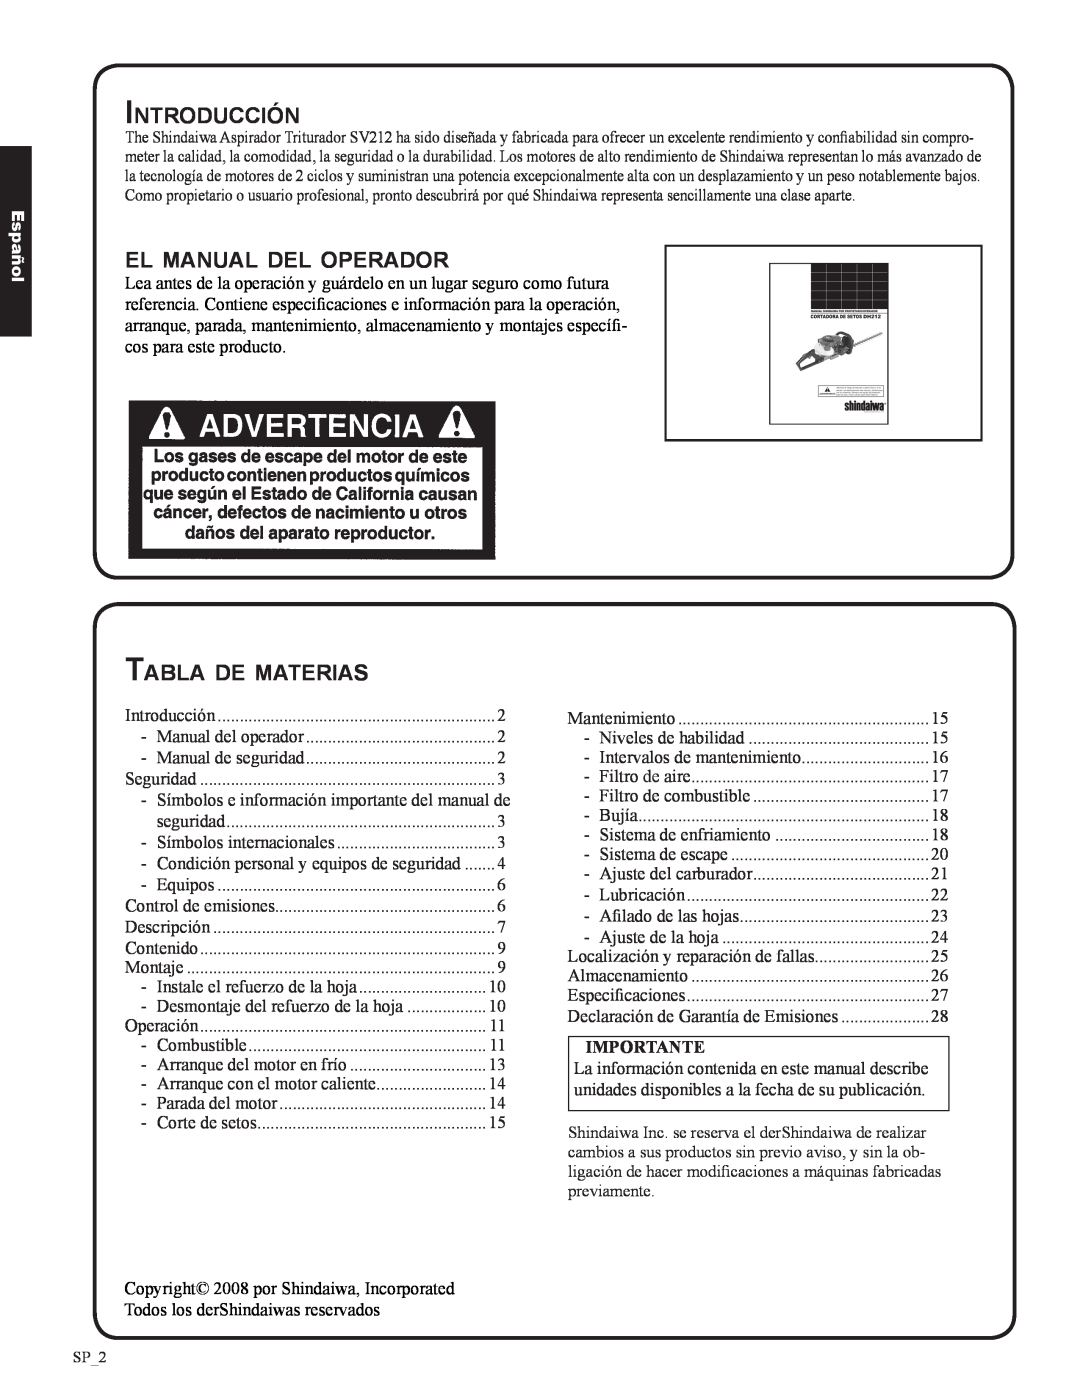 Shindaiwa DH212, 82053 Introducción, el manual del operador, Tabla de materias, Español 